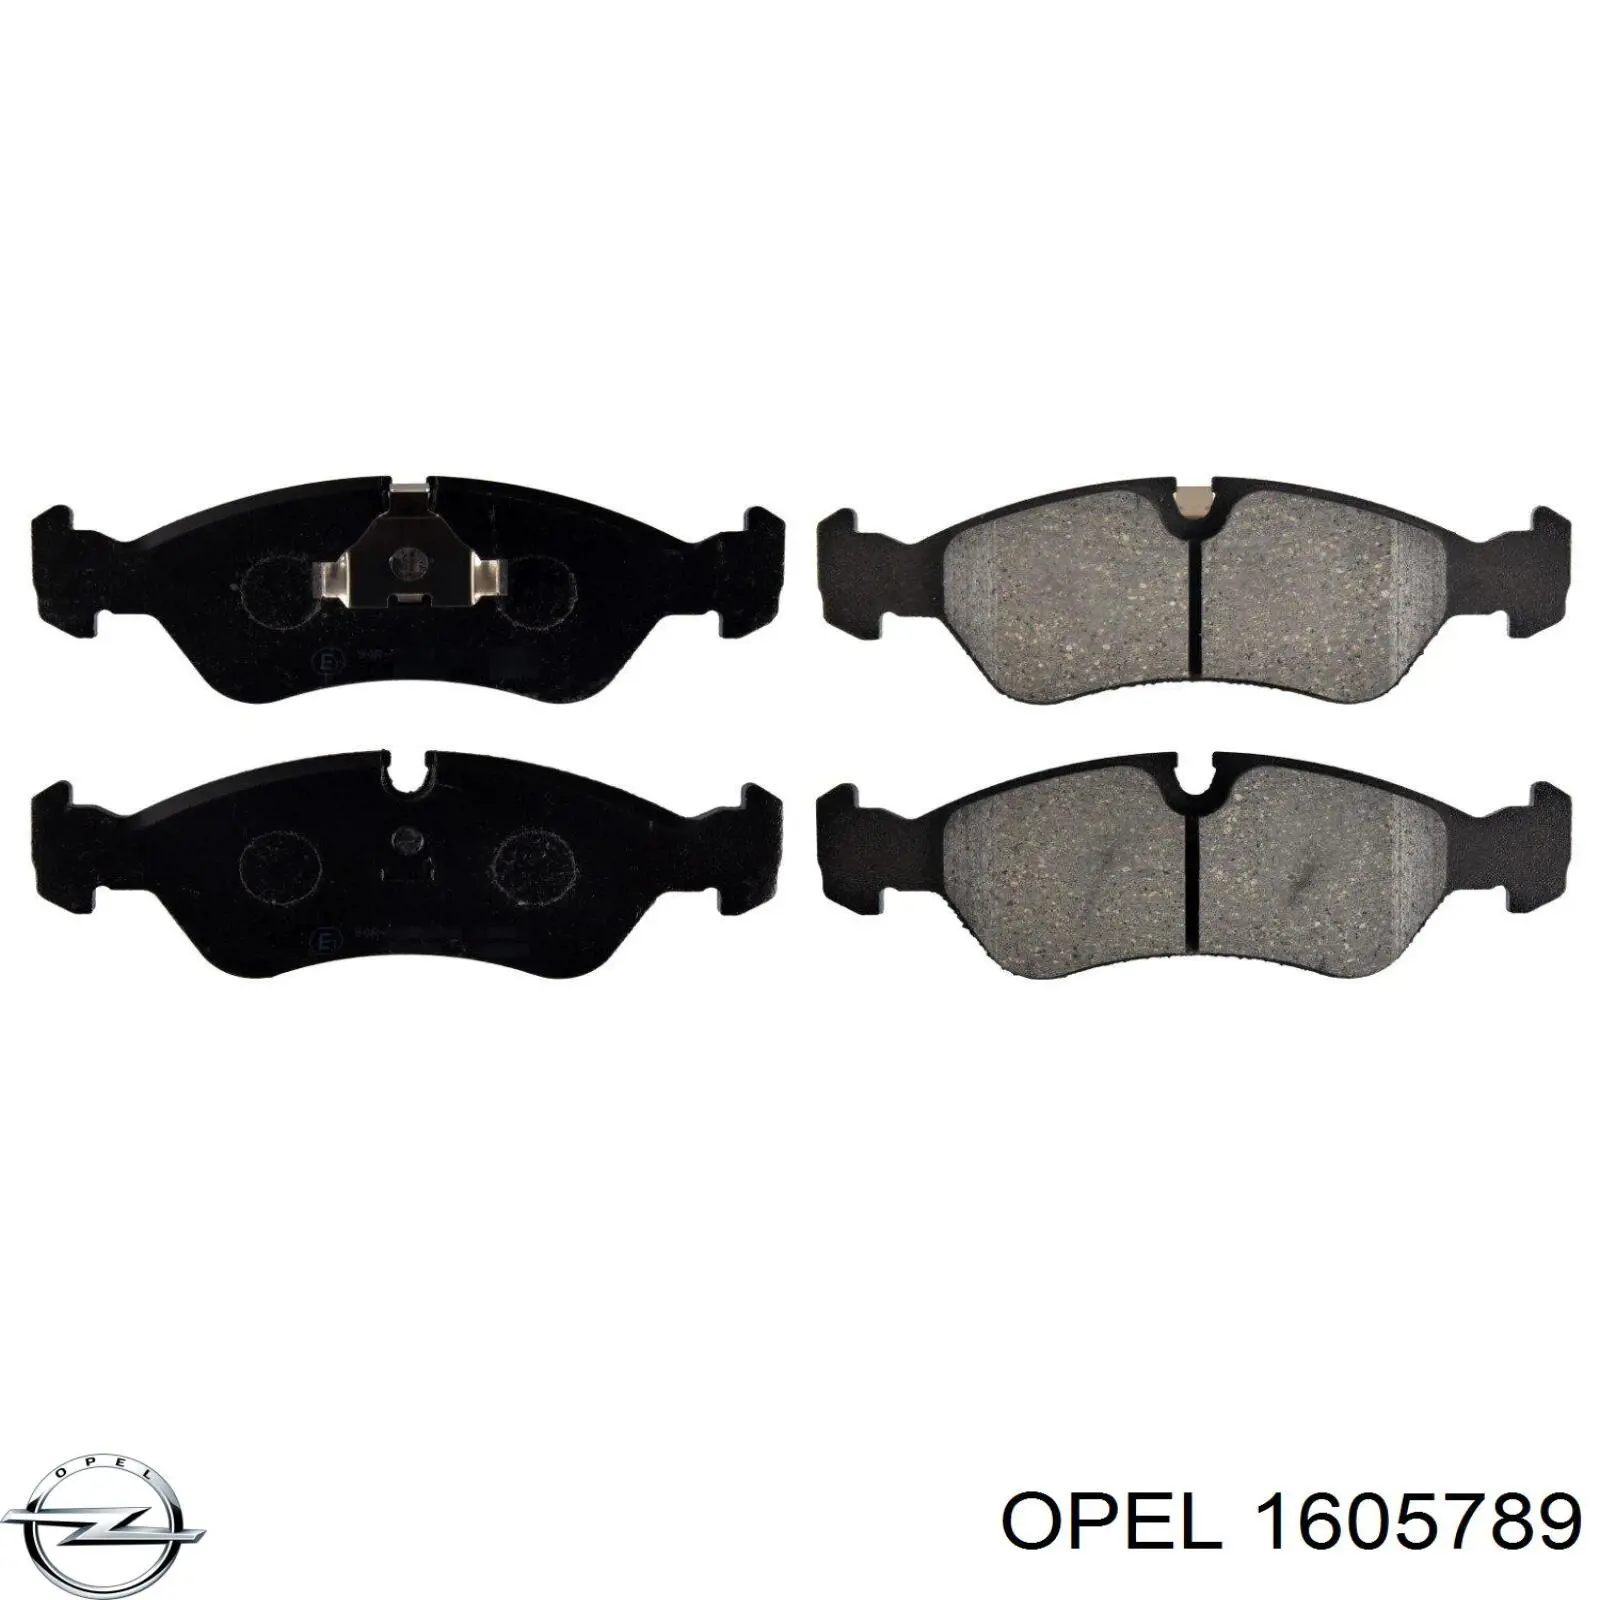 1605789 Opel колодки тормозные передние дисковые